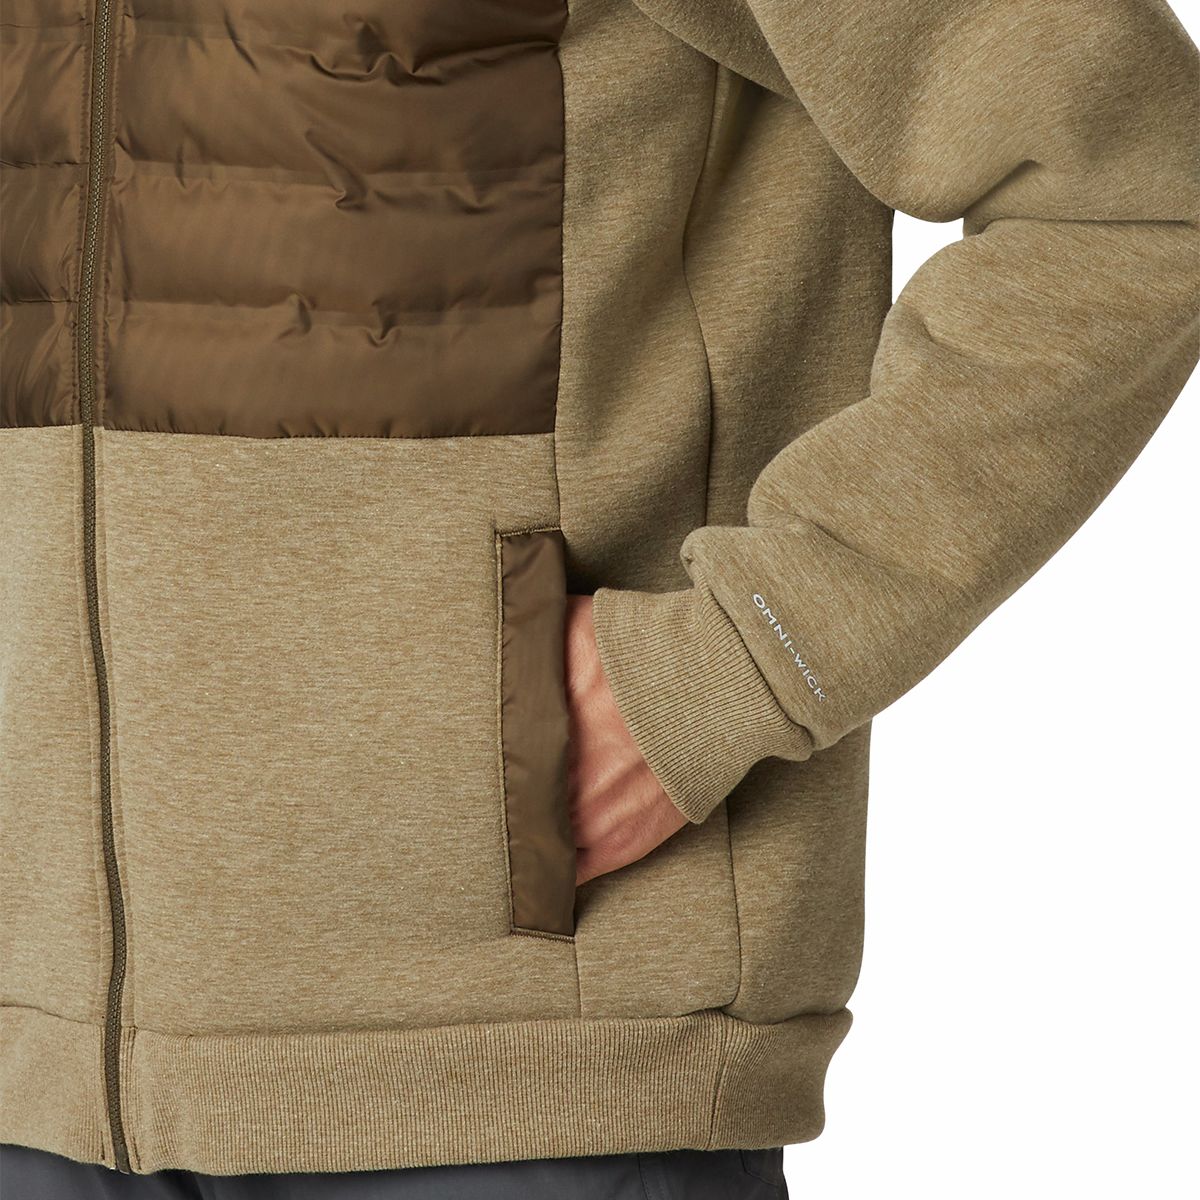 columbia men's northern comfort full zip jacket